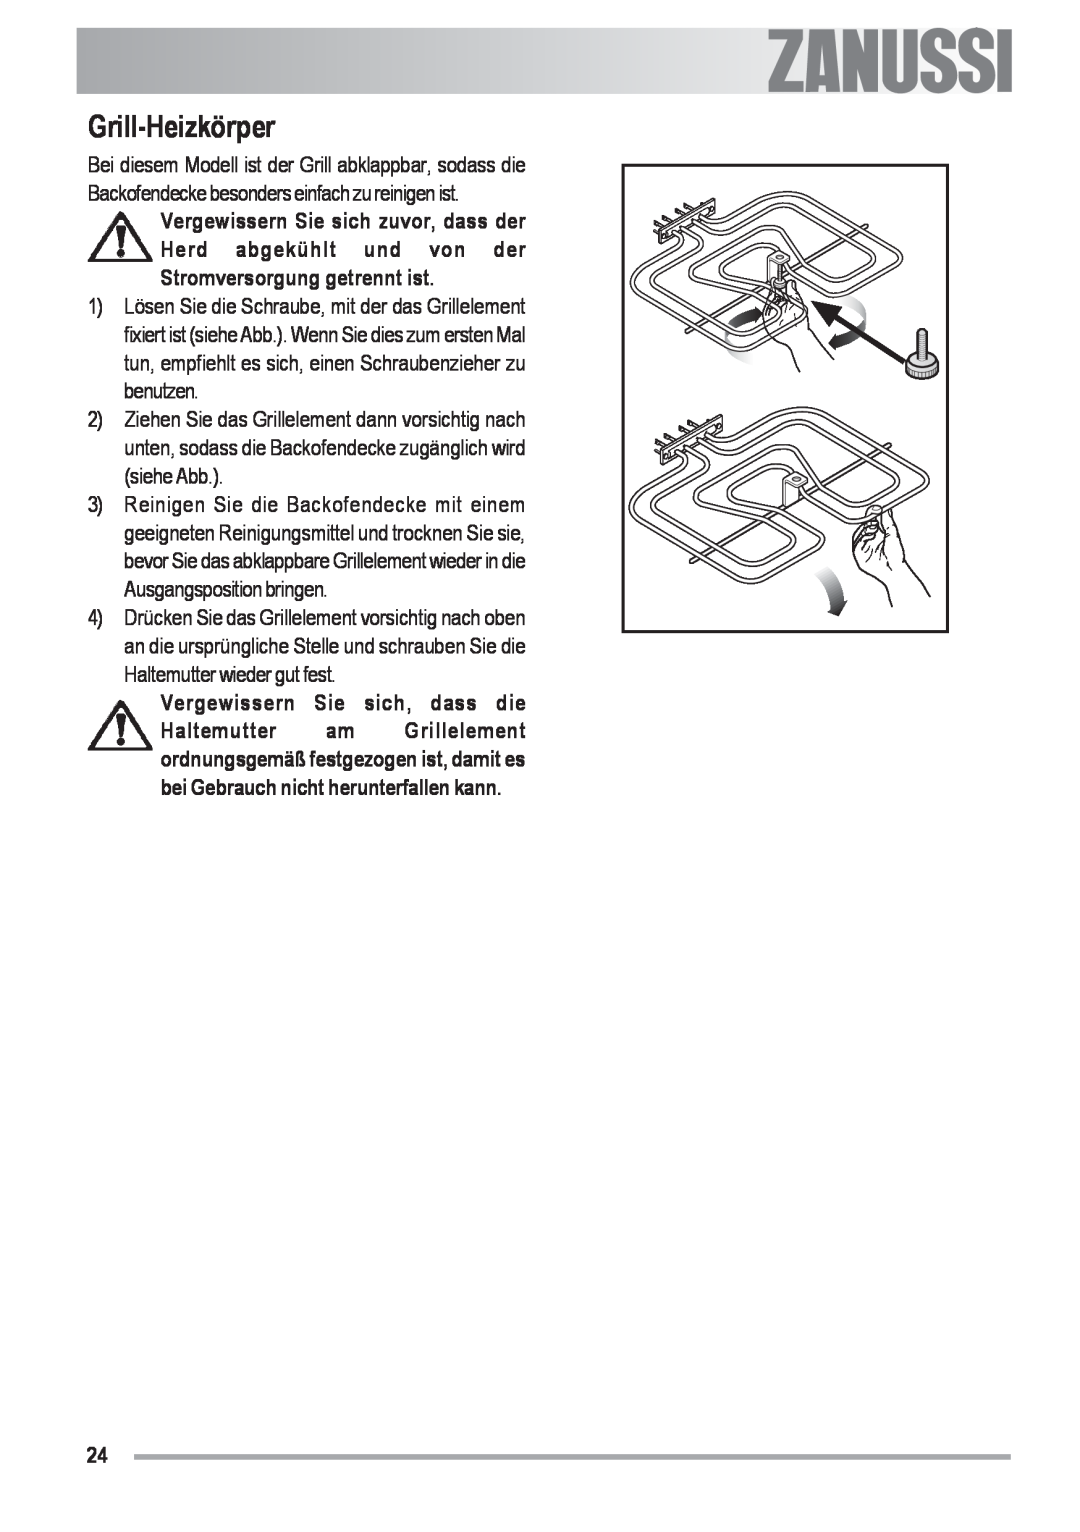 Zanussi ZOU 592 user manual Grill-Heizkörper, Vergewissern Sie sich, dass die, Electrolux 